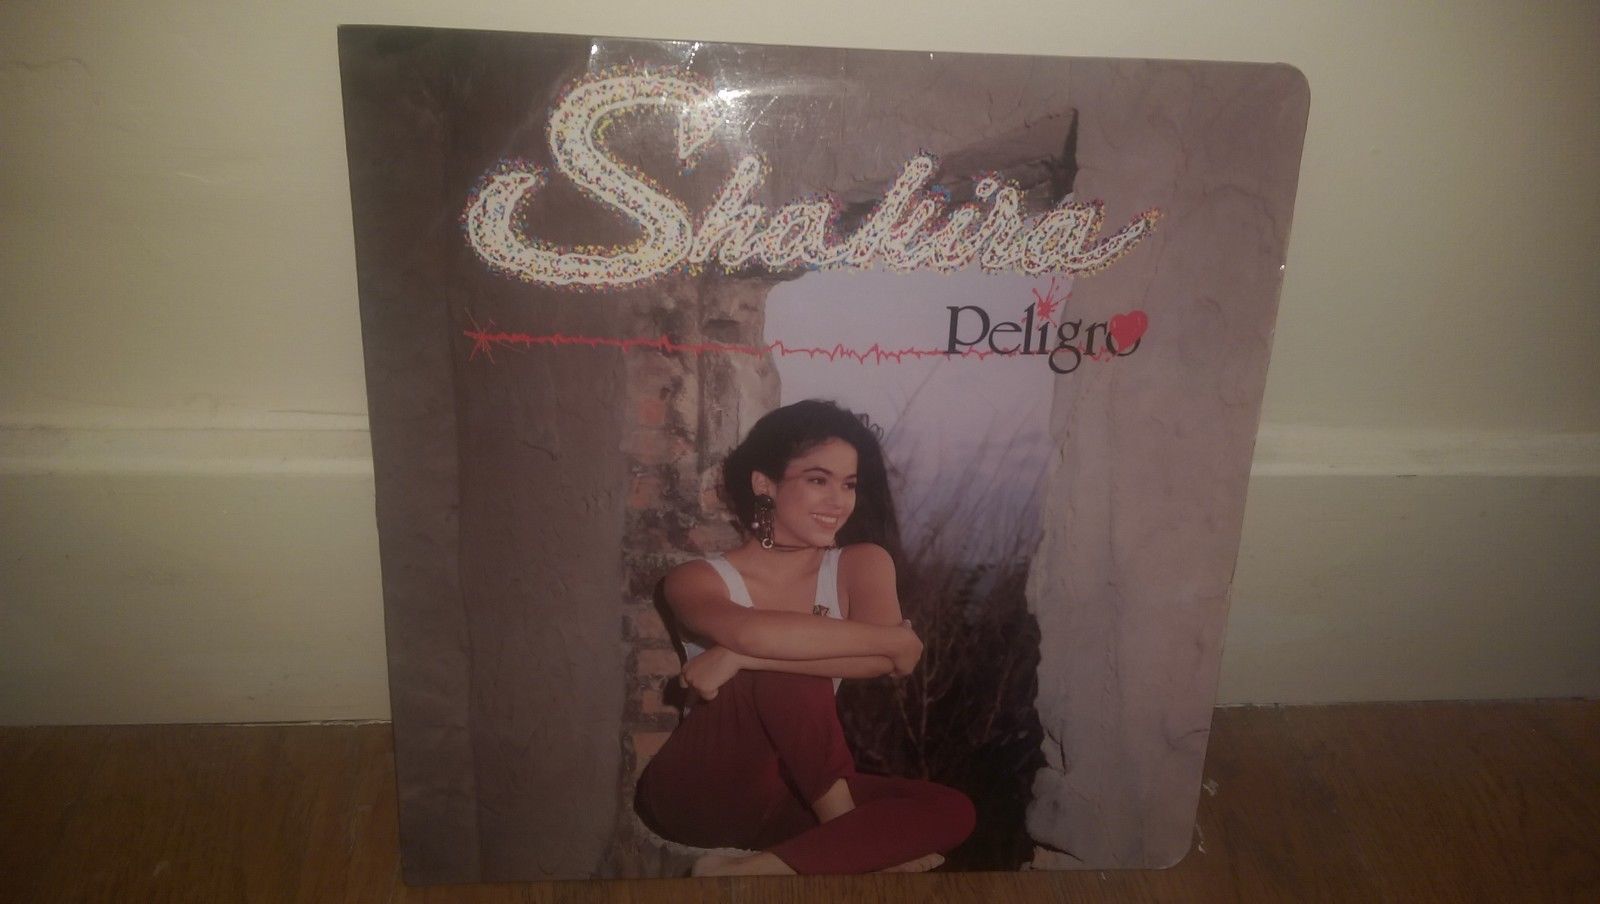 Shakira - PELIGRO 1993 Vinyl LP Colombia RARE WITH LYRIC INSERT - Best Copy EXC